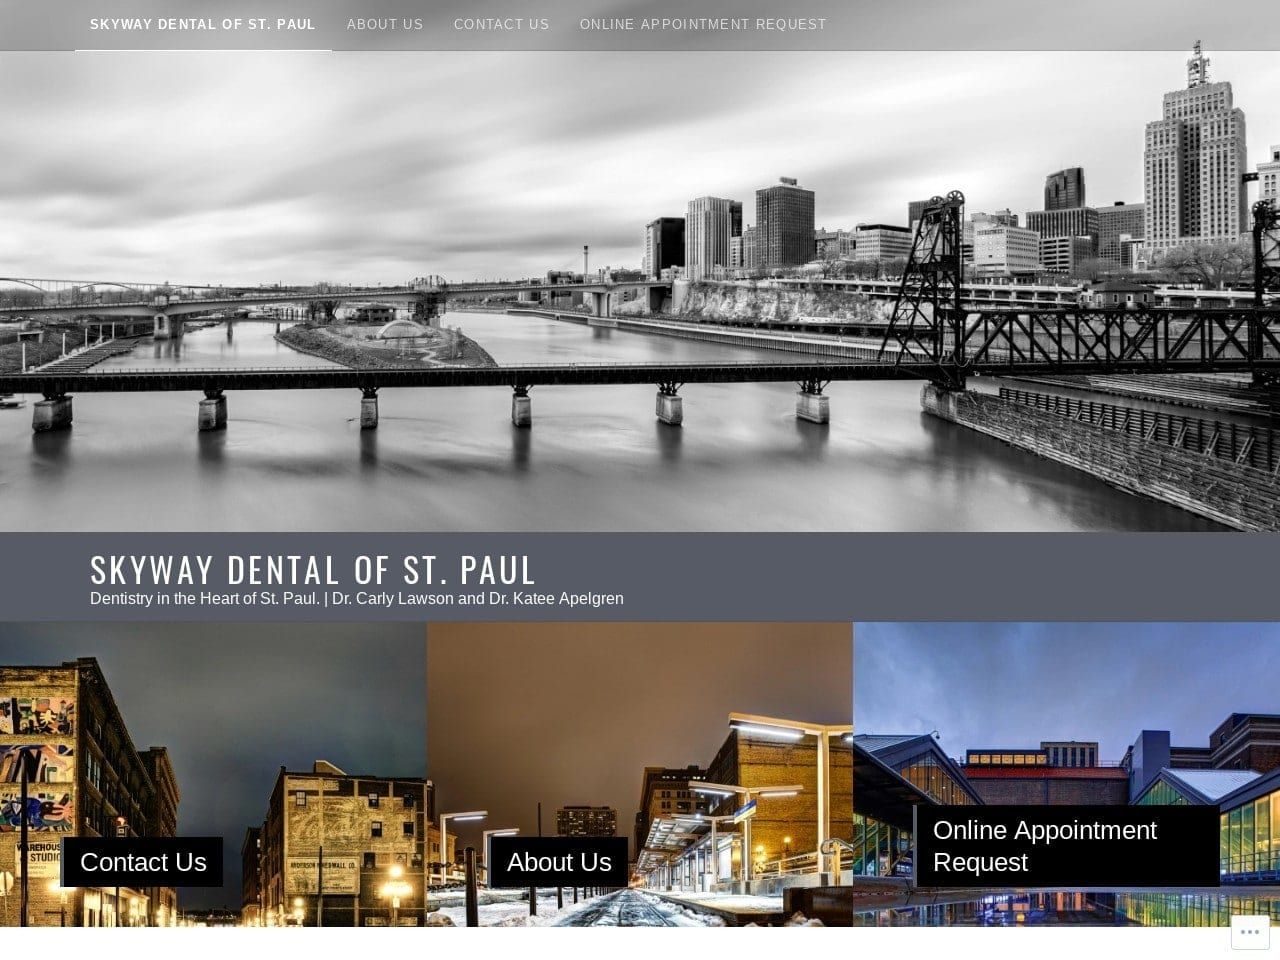 Skyway Dental of St Paul Website Screenshot from skywaydentalofstpaul.com